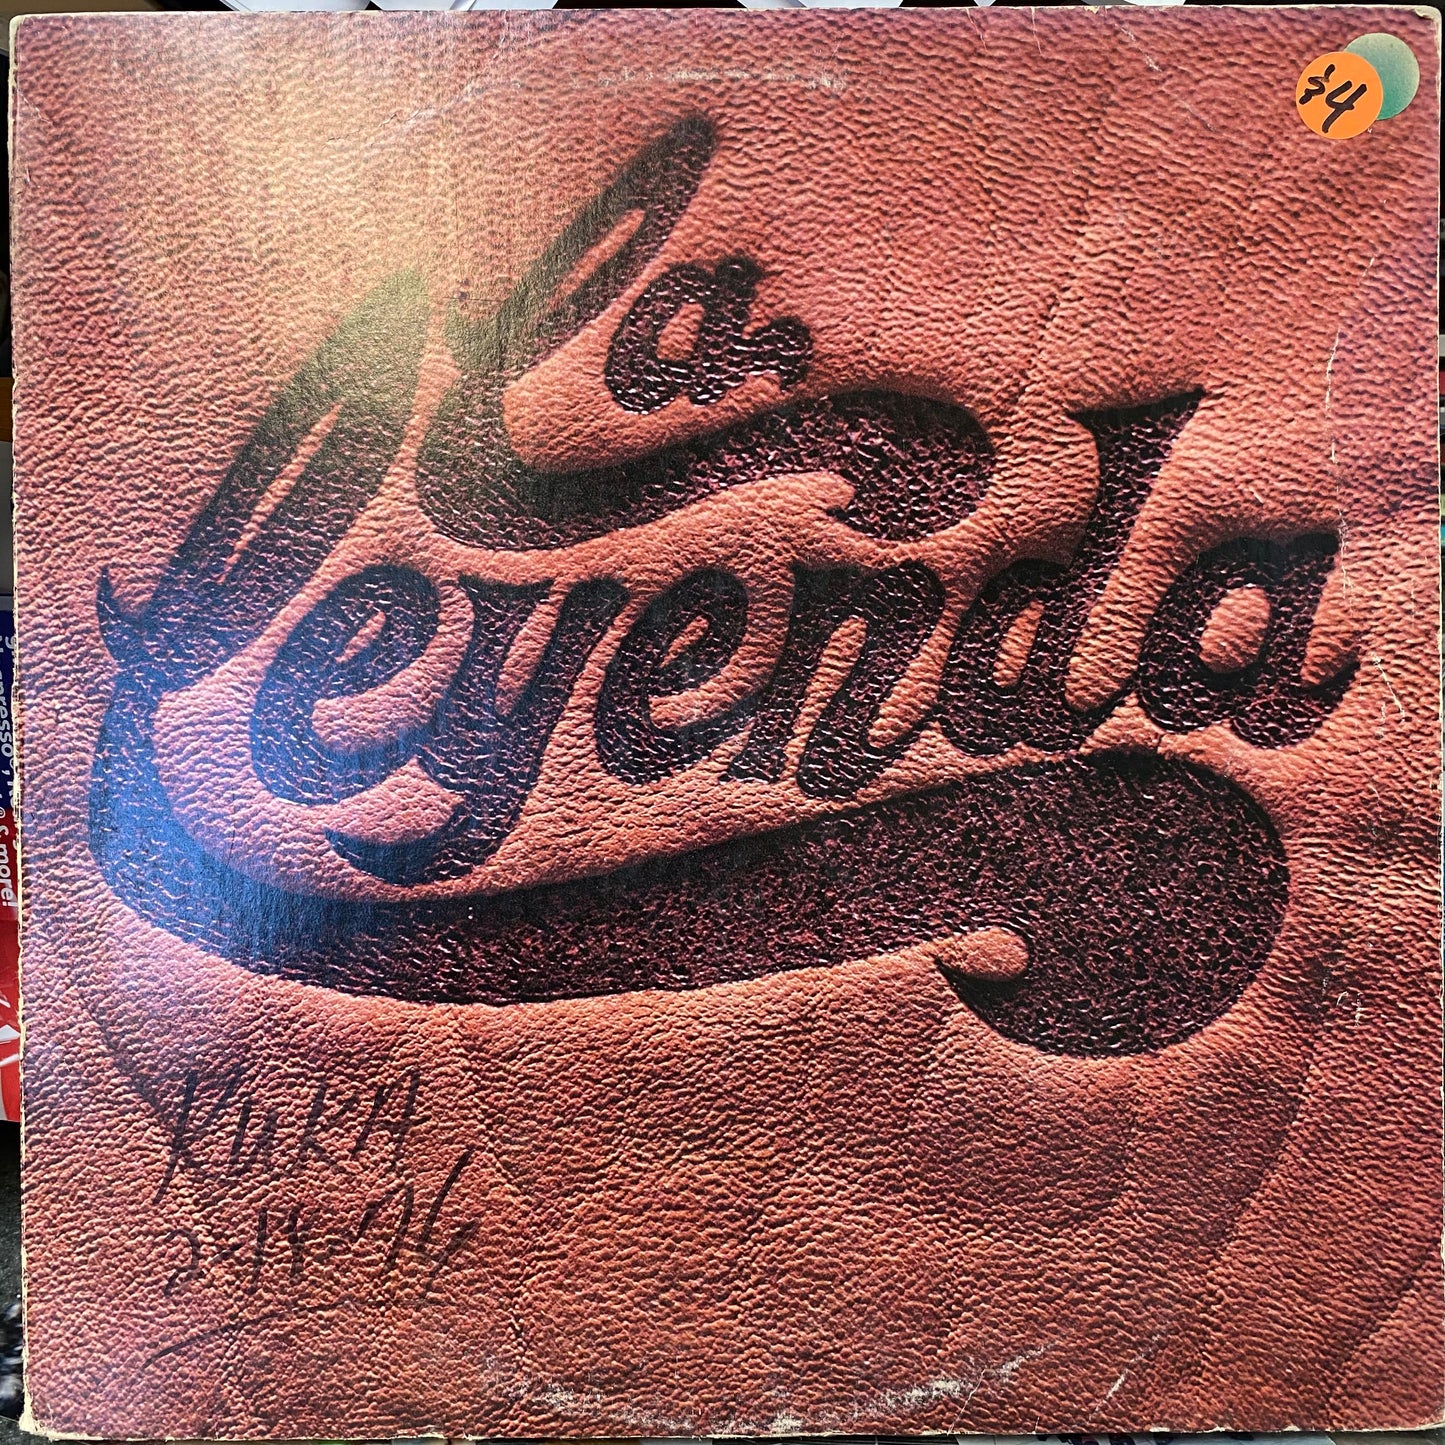 La Leyenda -  (Vinyl)